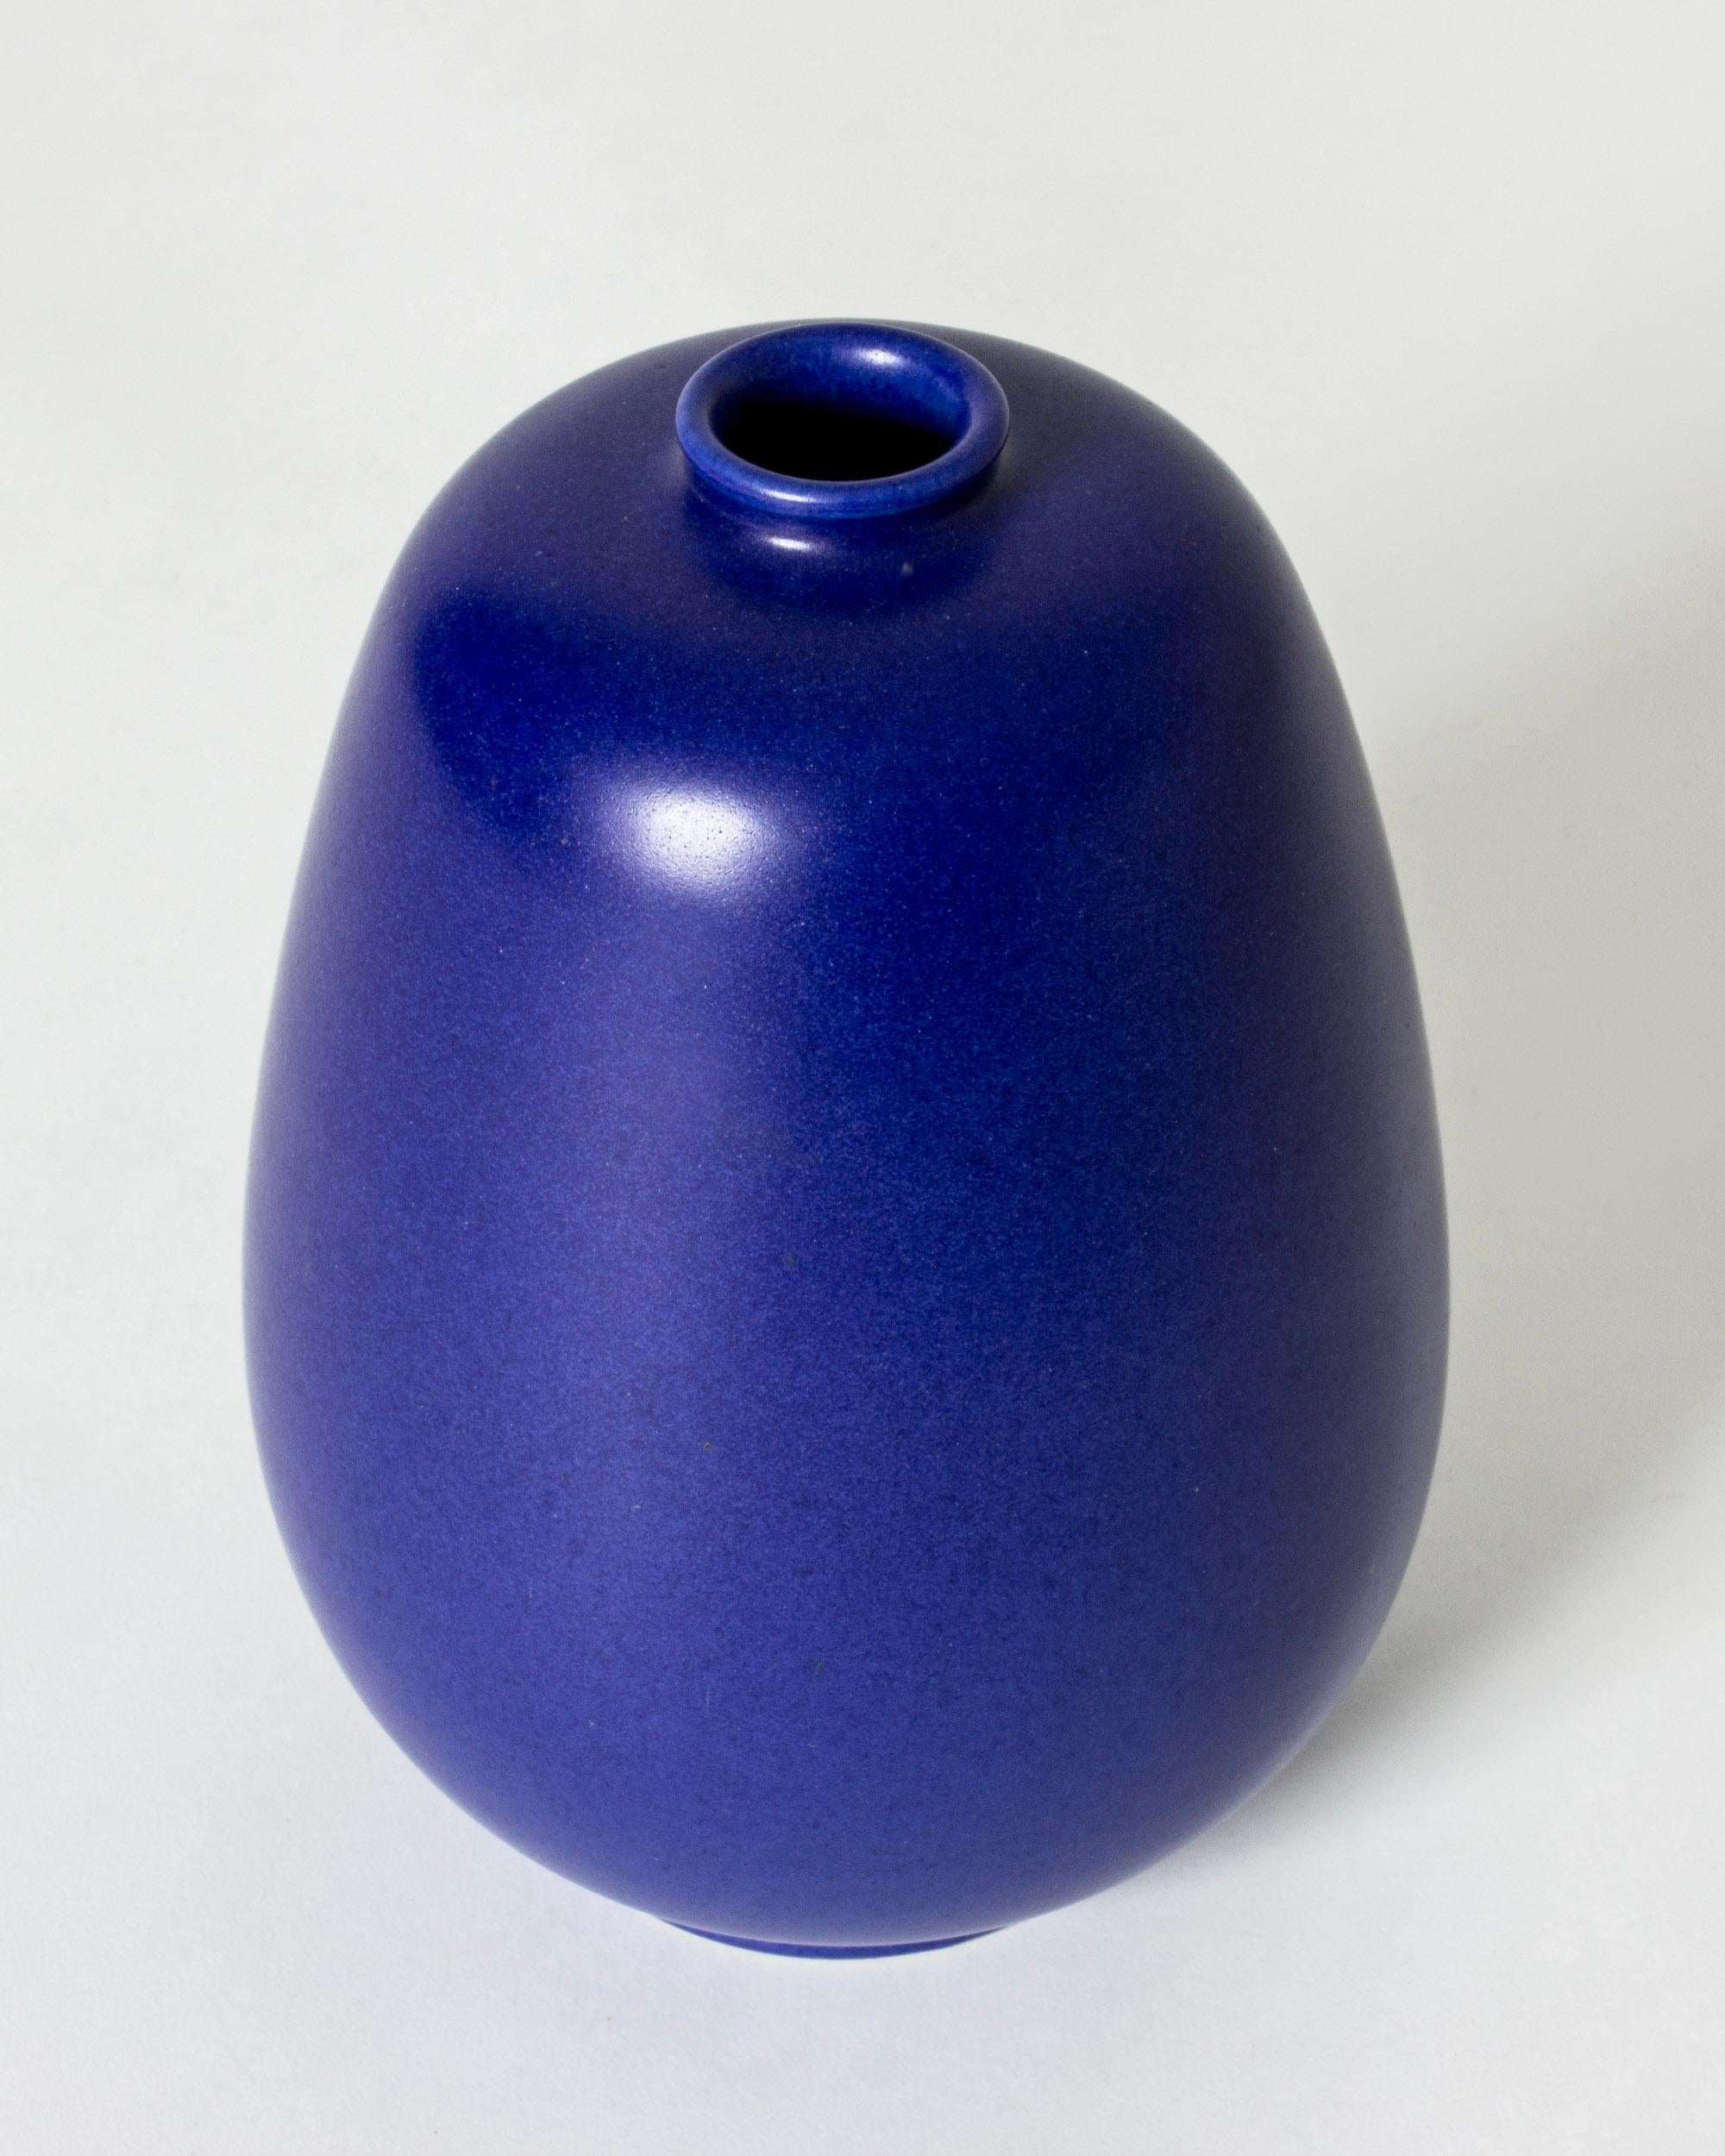 Auffällige Vase aus Steinzeug von Eric und Ingrid Triller, in einer stromlinienförmigen, kompakten Form. Schöne, undurchsichtige kobaltblaue Glasur.

Auf der Flucht vor dem Zweiten Weltkrieg ließen sich die deutschen Töpfer Eric und Ingrid Triller